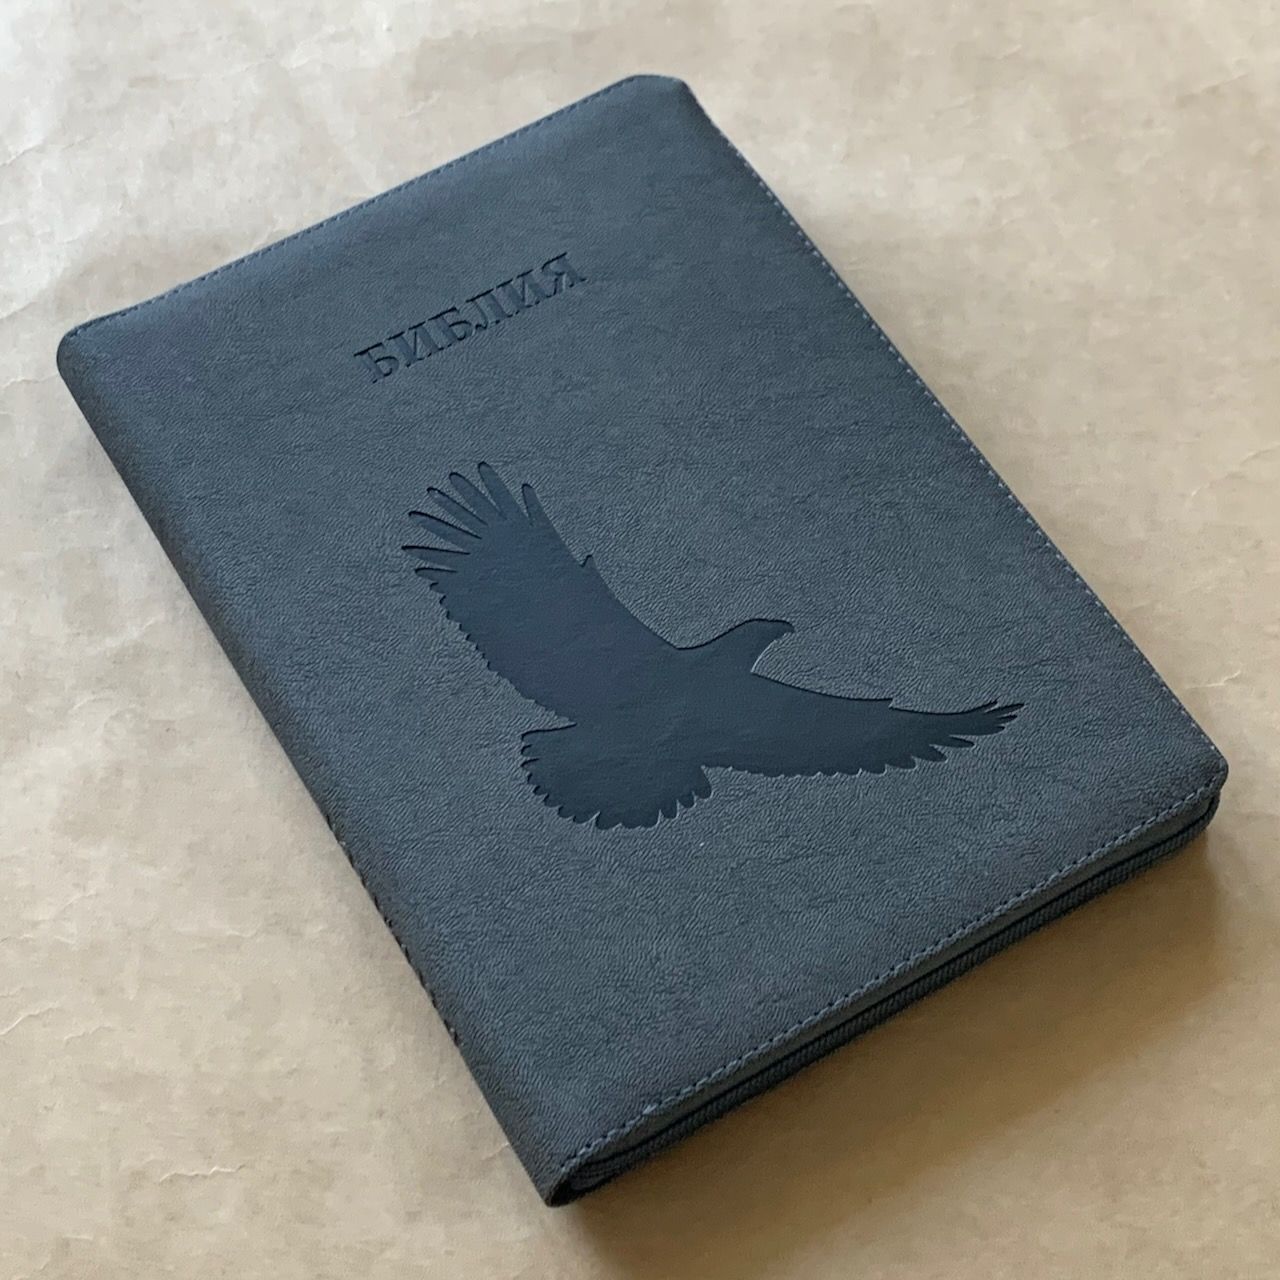 Библия 076zti код G3, дизайн "орел" термо печать, переплет из искусственной кожи на молнии с индексами, цвет темно-серый мрамор матовый, размер 180x243 мм